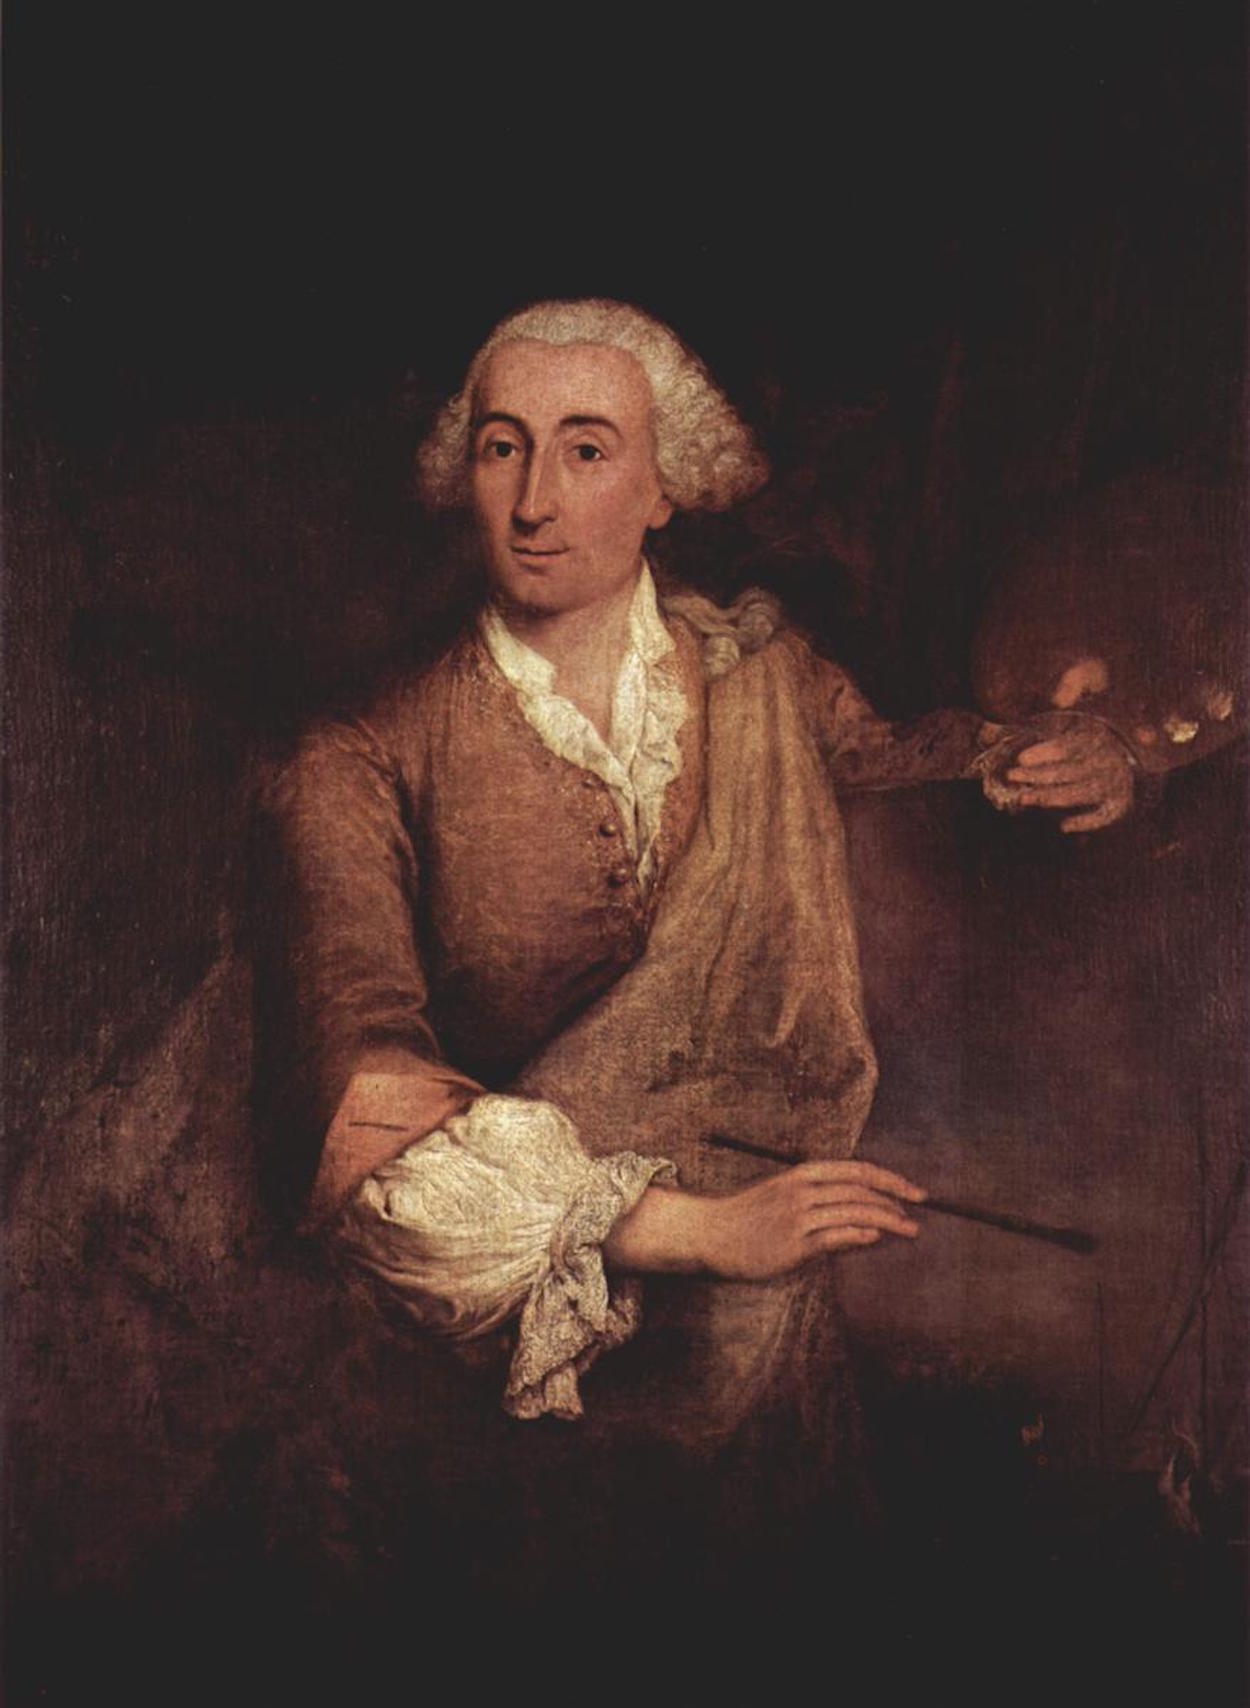 Francesco Guardi - October 5, 1712 - January 1, 1793